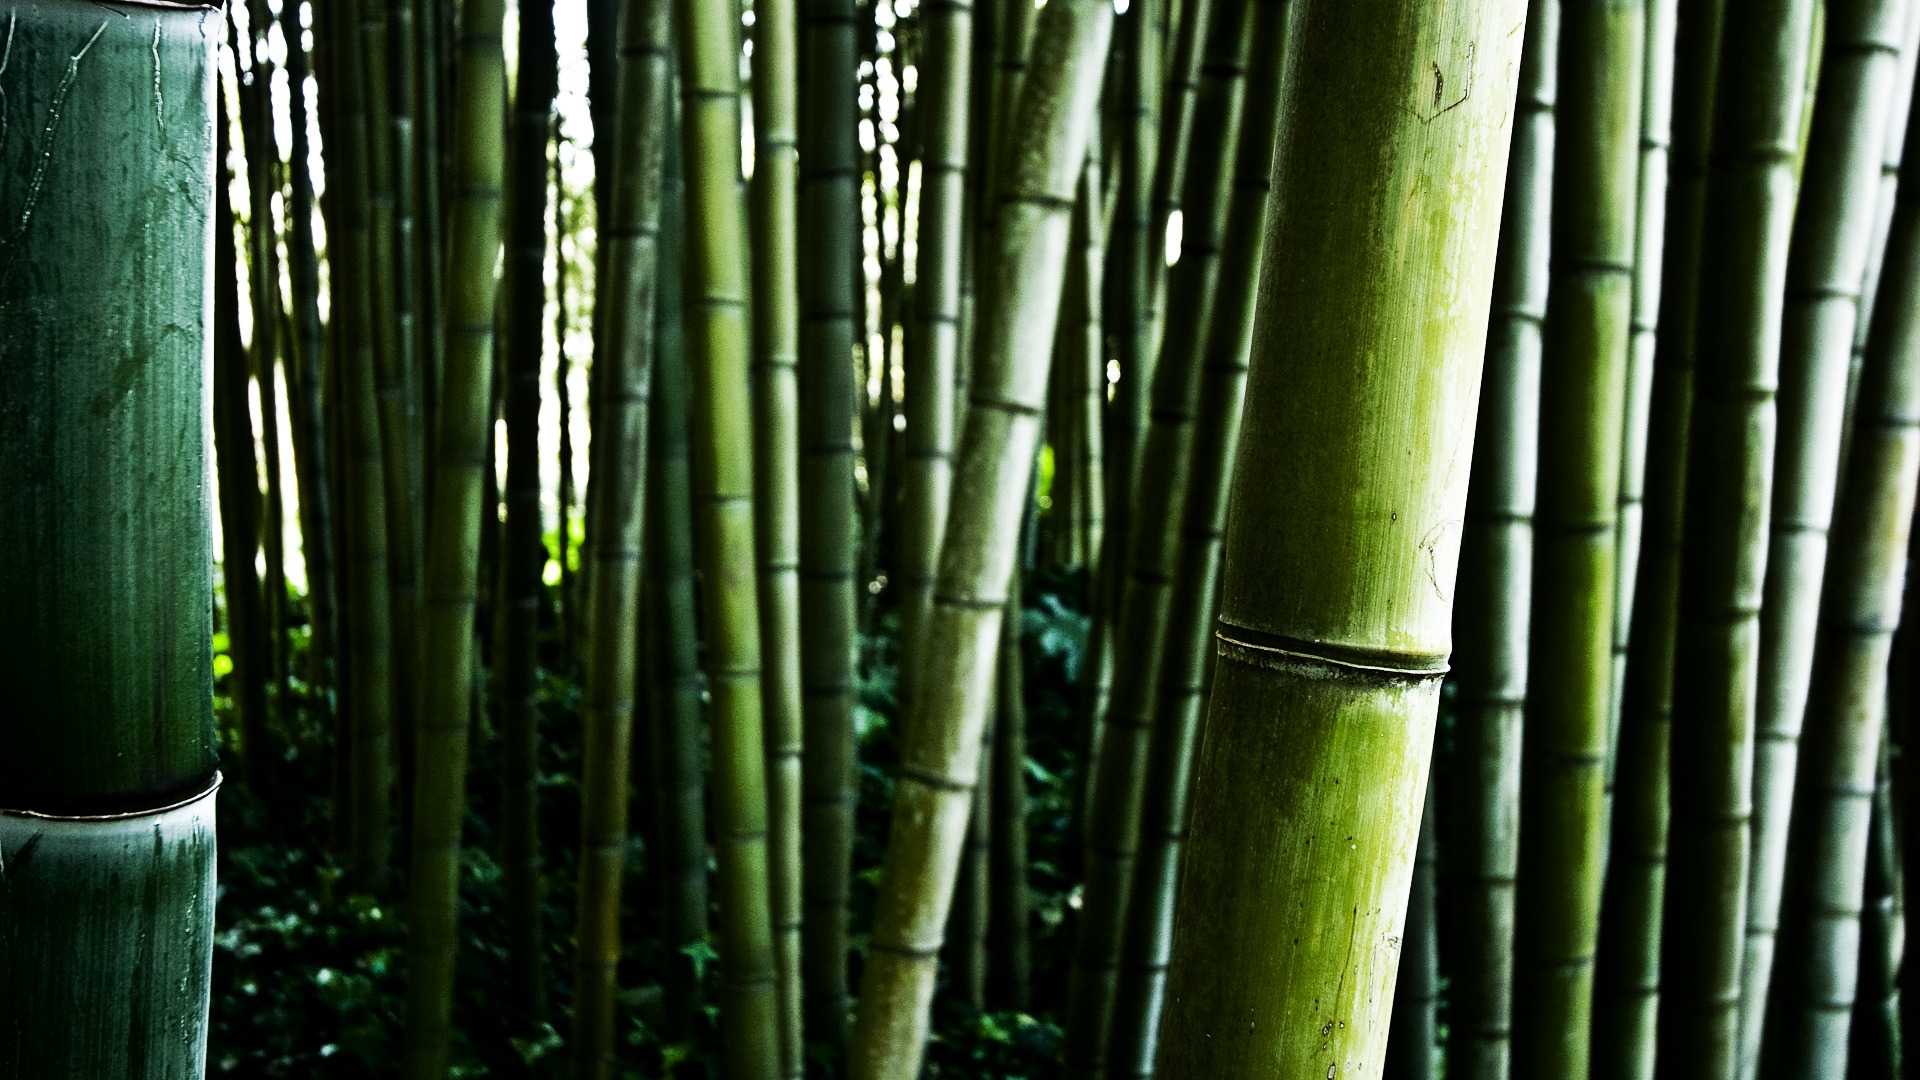 Bamboo stalks for 1920 x 1080 HDTV 1080p resolution